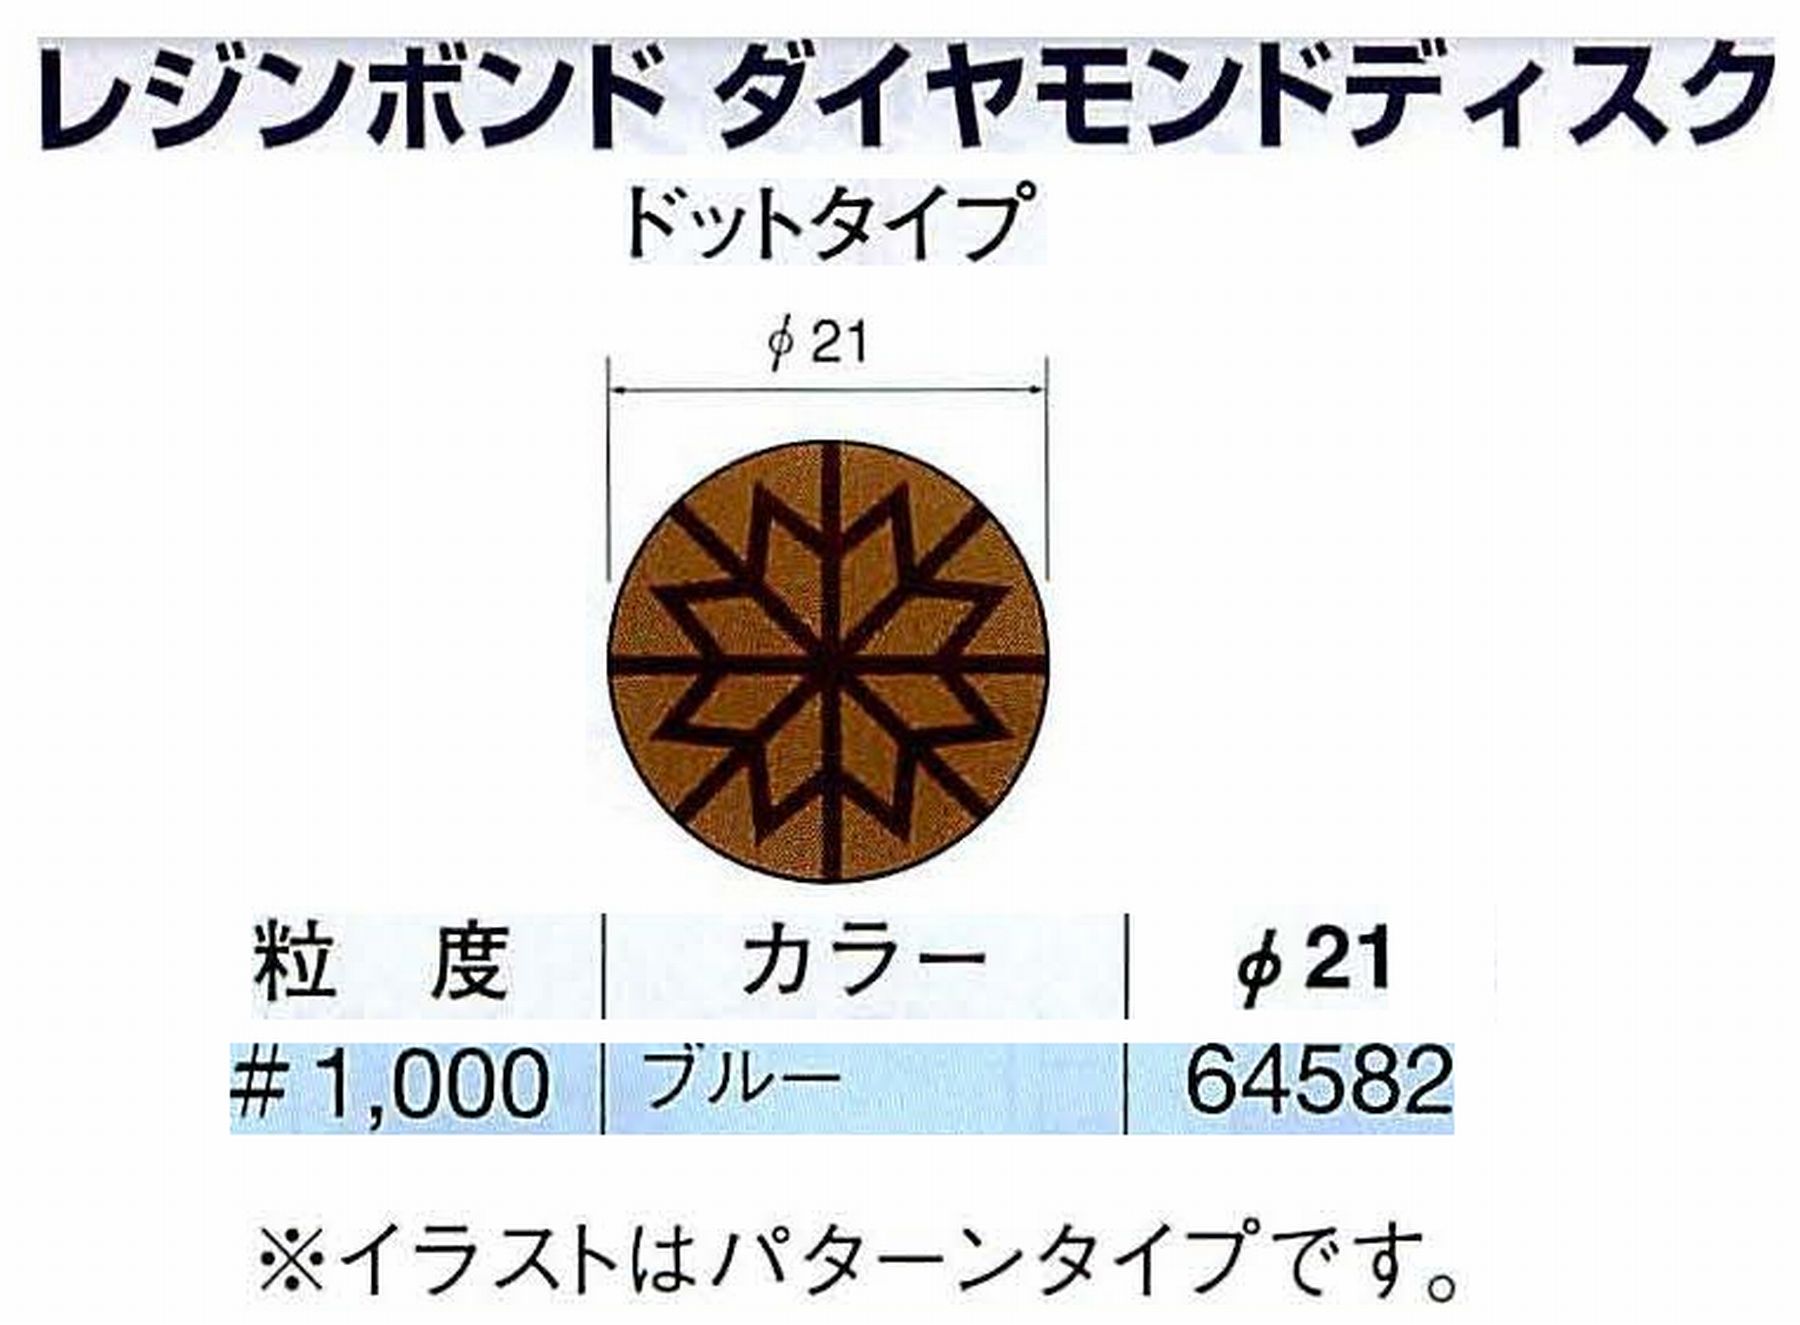 ナカニシ/NAKANISHI アングルグラインダ(電動・エアー) アングルアタッチメント専用工具 レジンボンド ダイヤモンドディスク(ドットタイプ) 64582